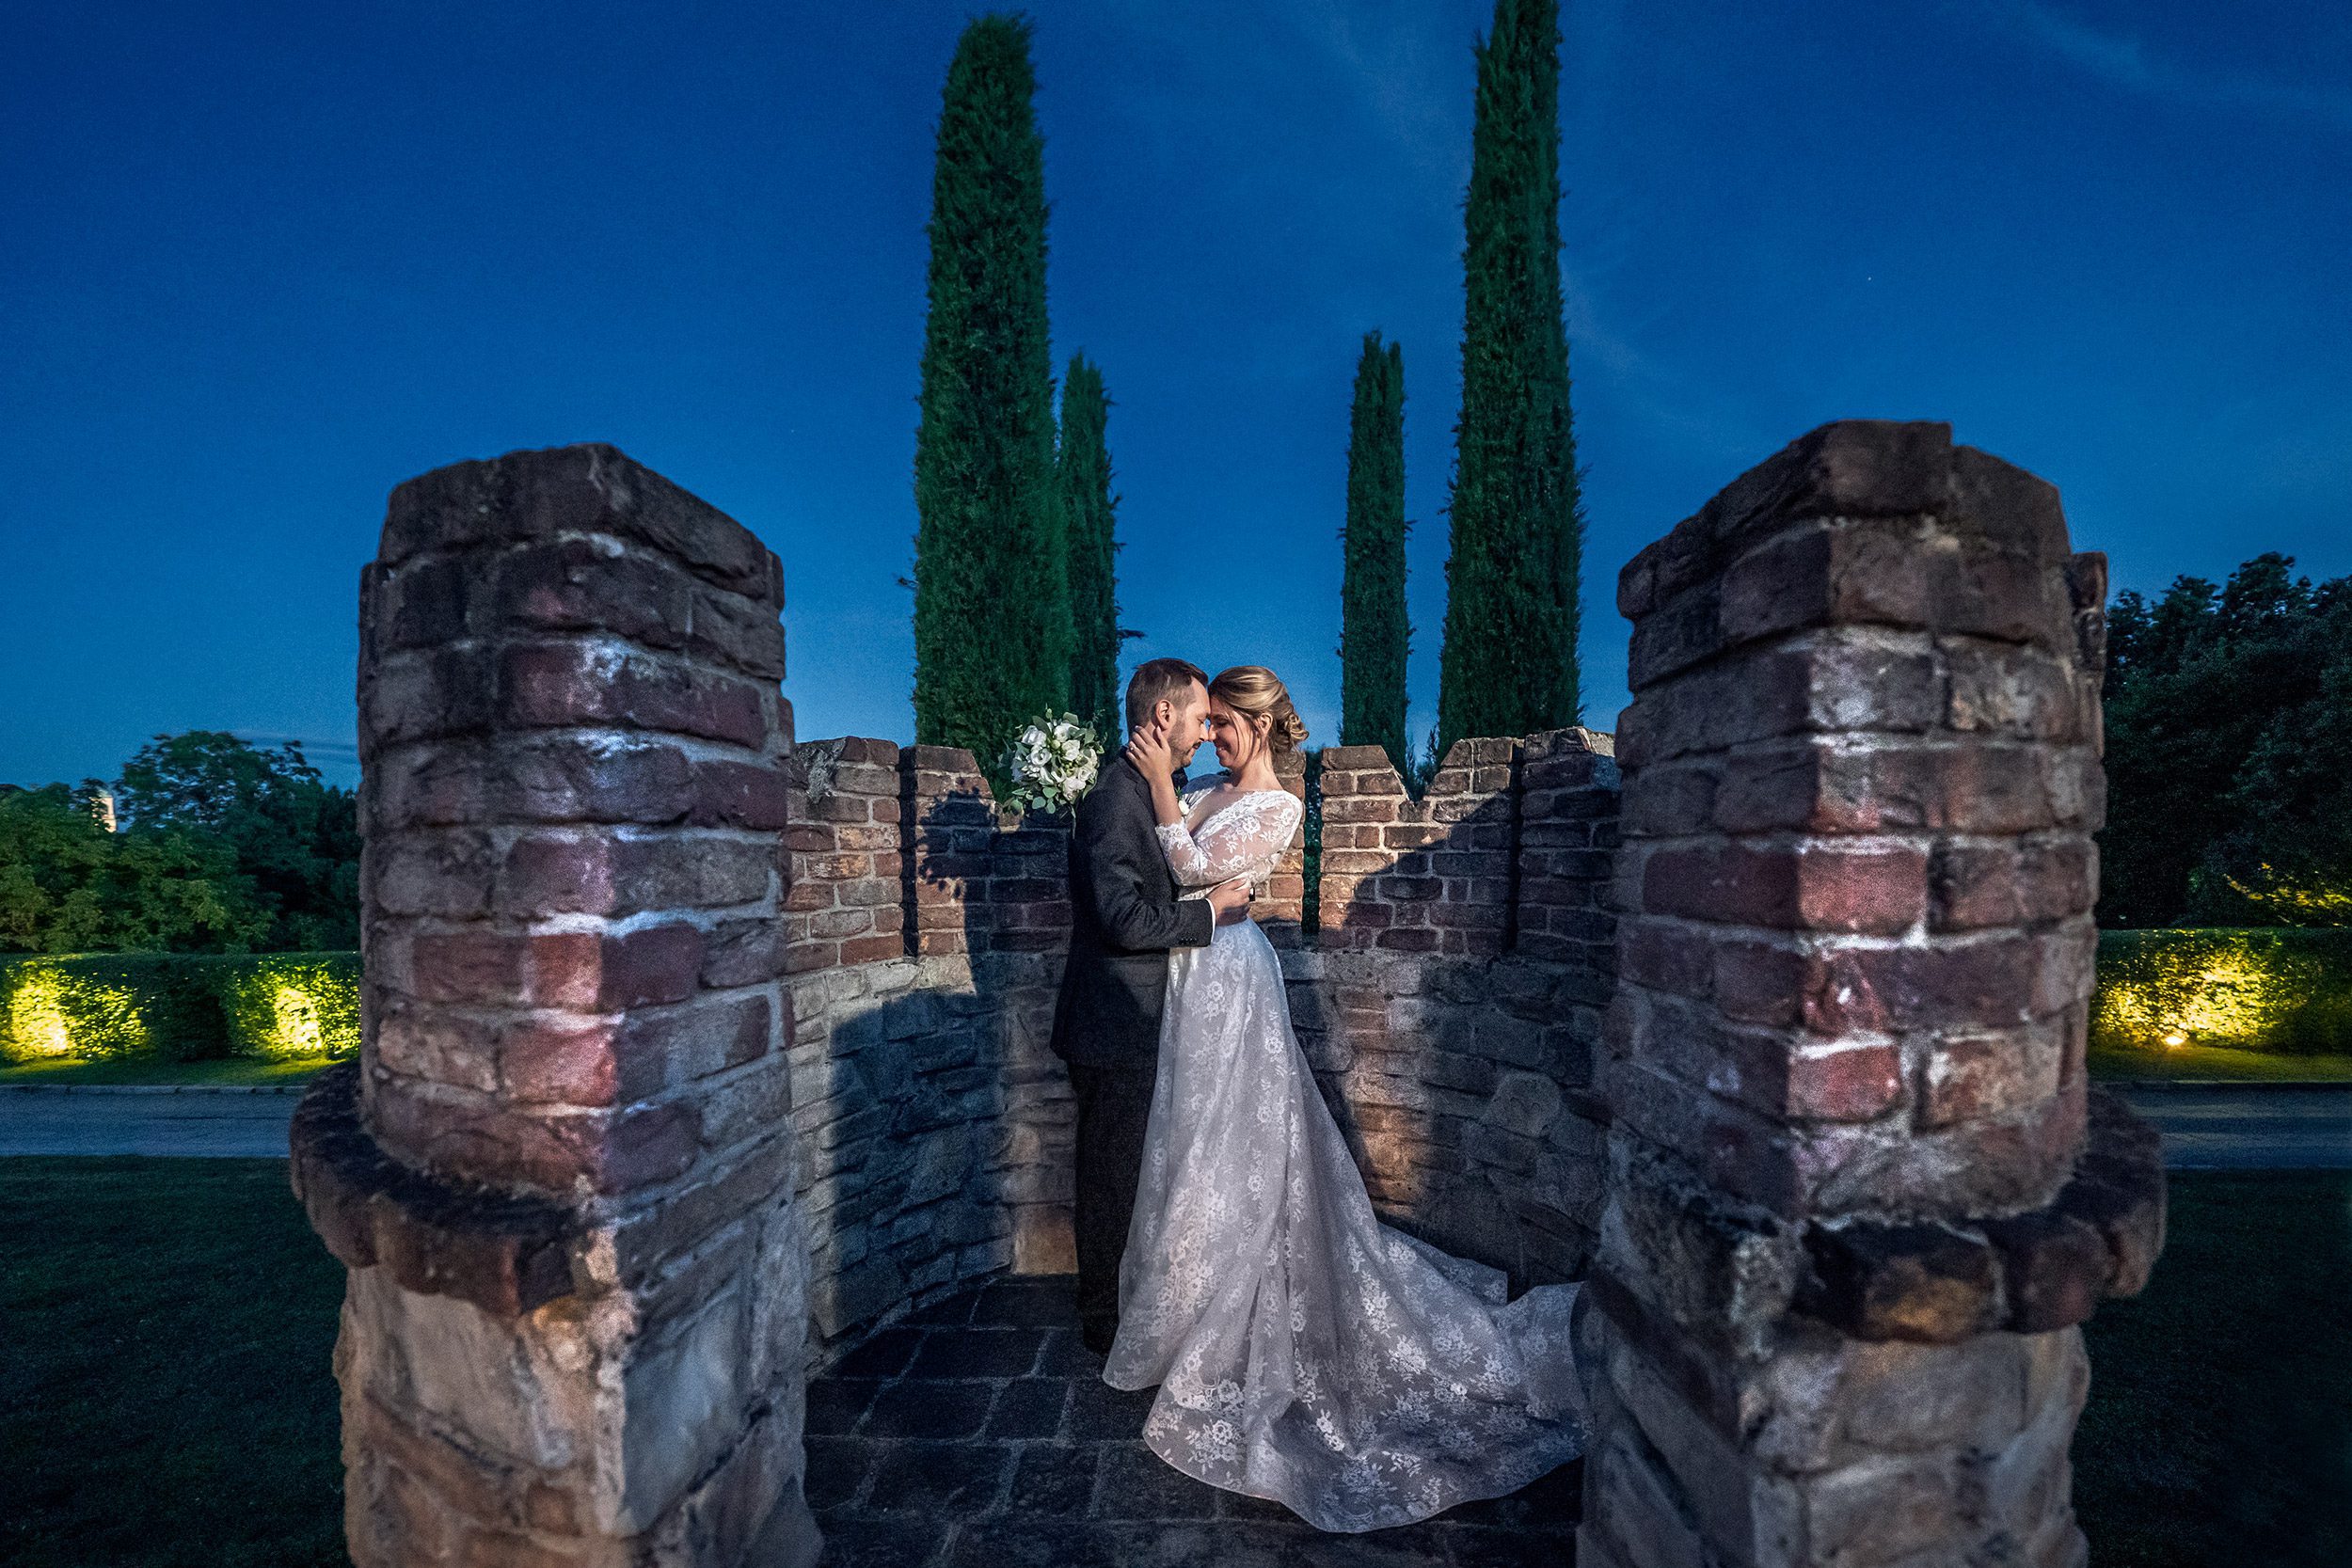 000 fotografo matrimonio reportage wedding sposi castello cernusco lombardone lecco 1